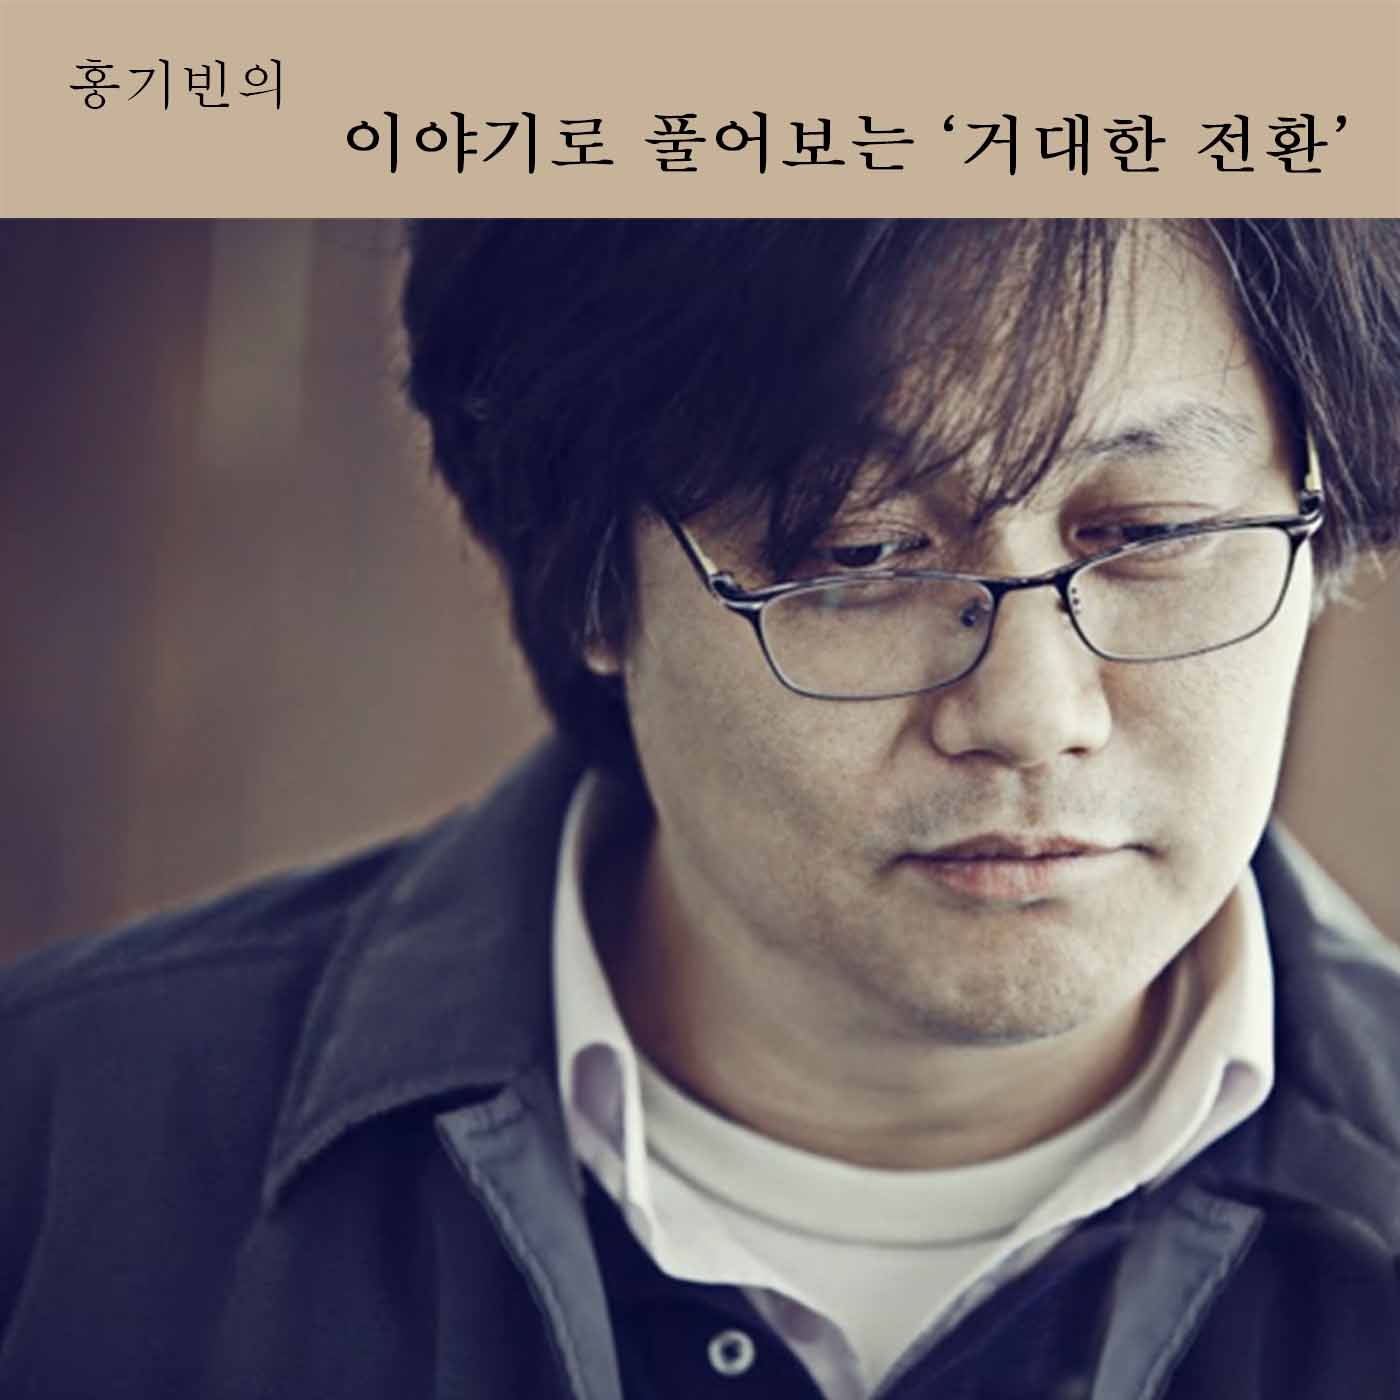 [팟캐스트] 홍기빈의 이야기로 풀어보는 ‘거대한 전환’ Episode 02